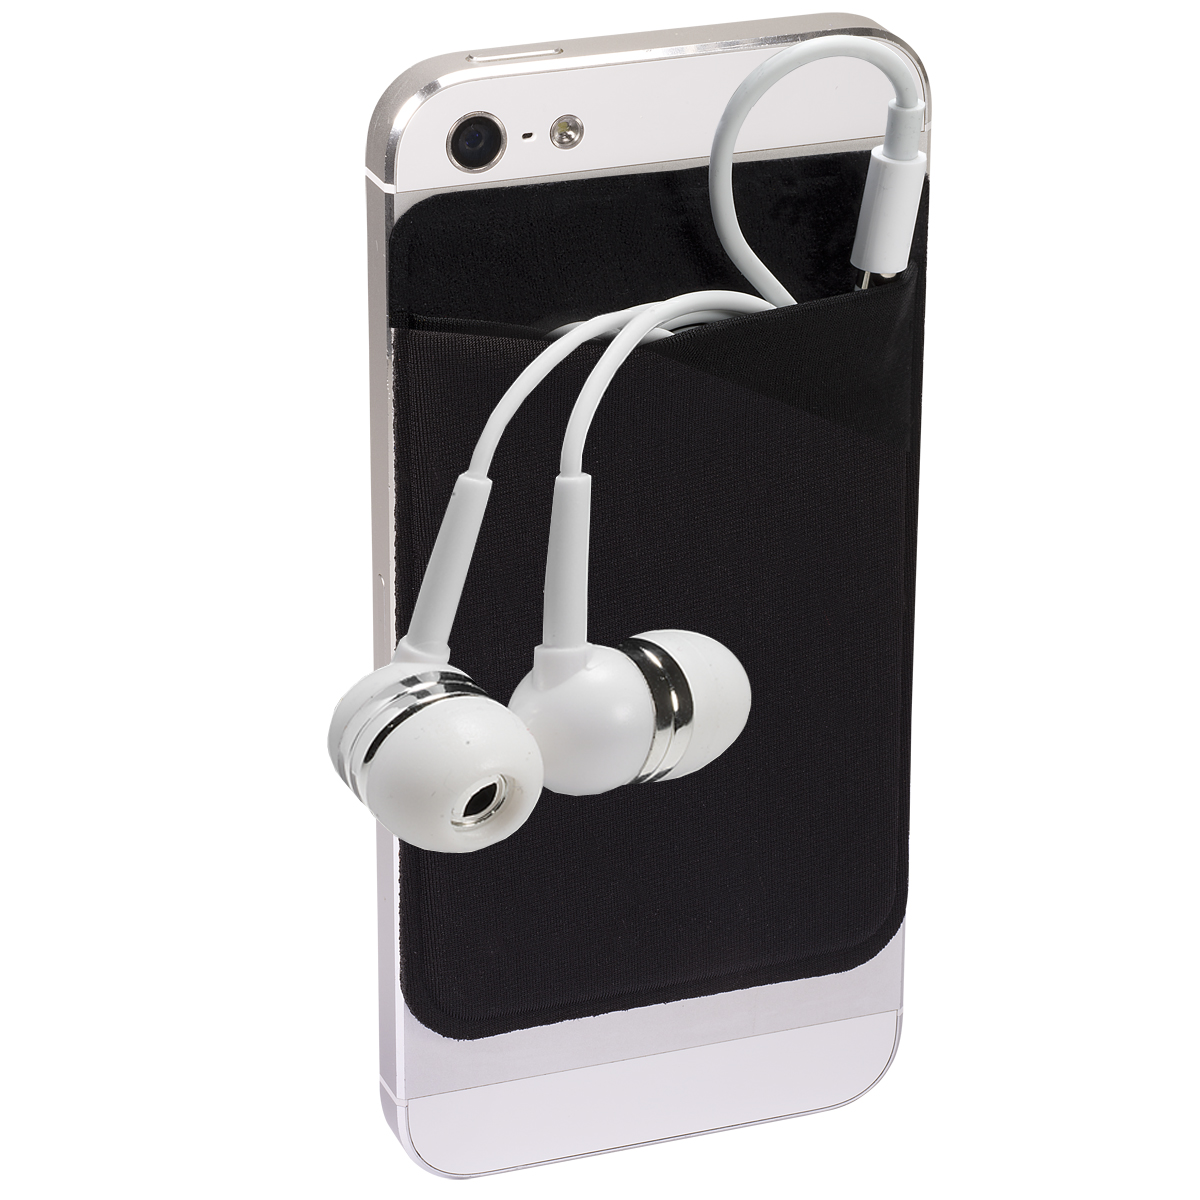 Mobile Device Pocket & Earbuds Set